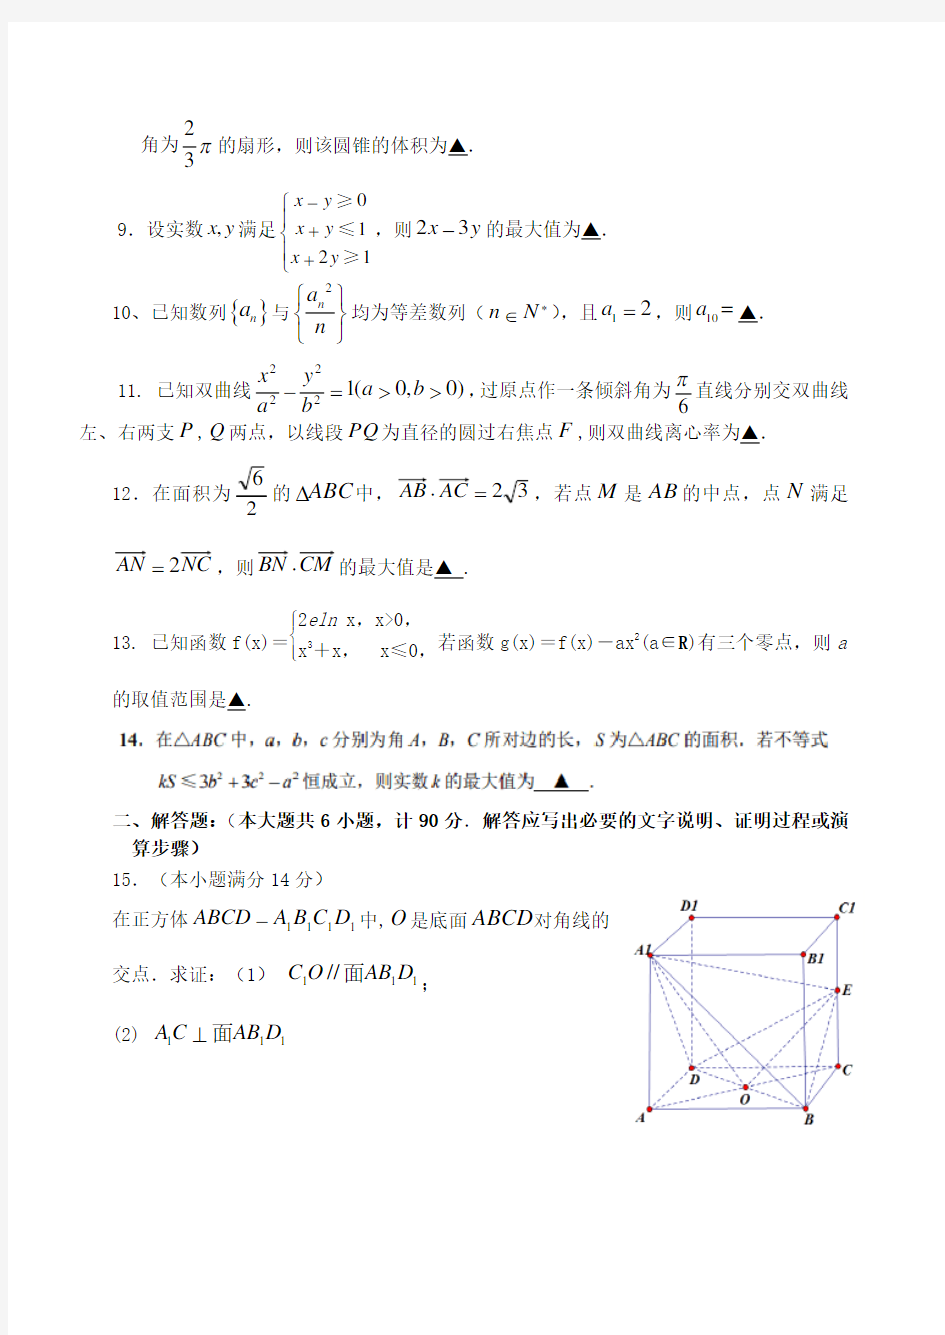 江苏省扬州中学2020届高三数学5月考前最后一卷